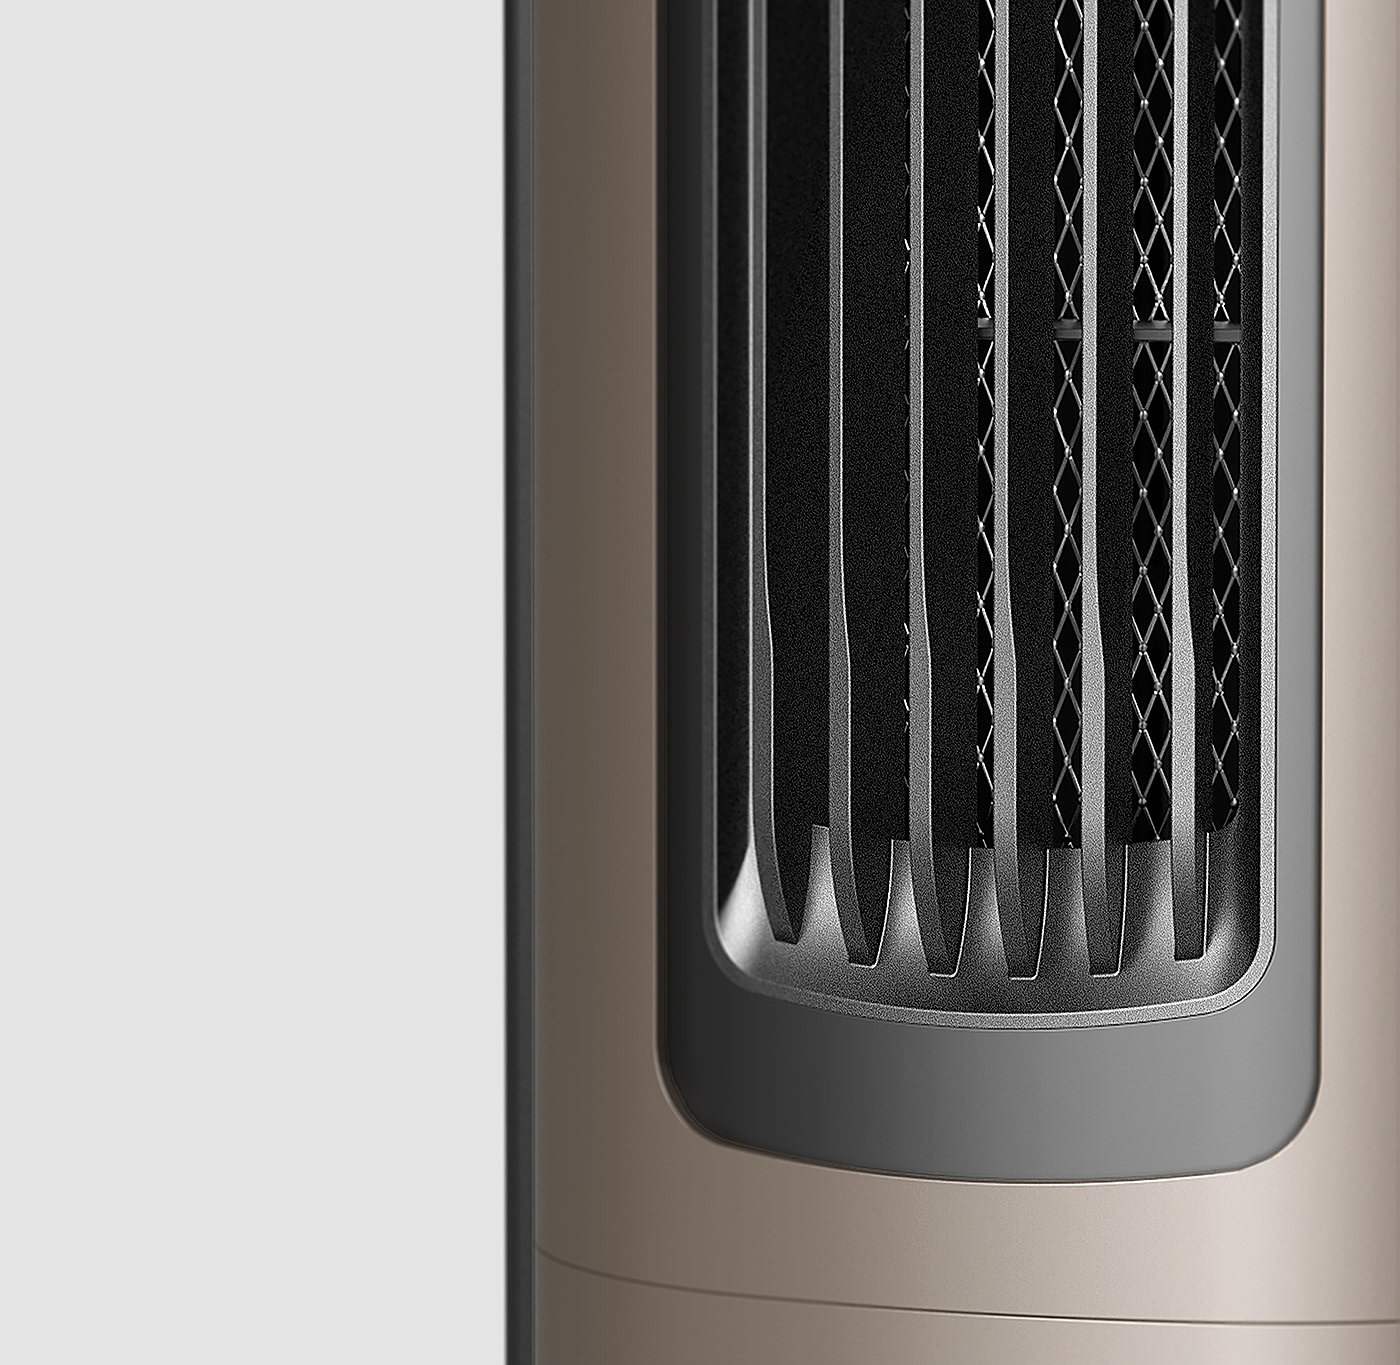 2019红点设计概念大奖，空气循环器，空气净化器，热雾加湿器功能，